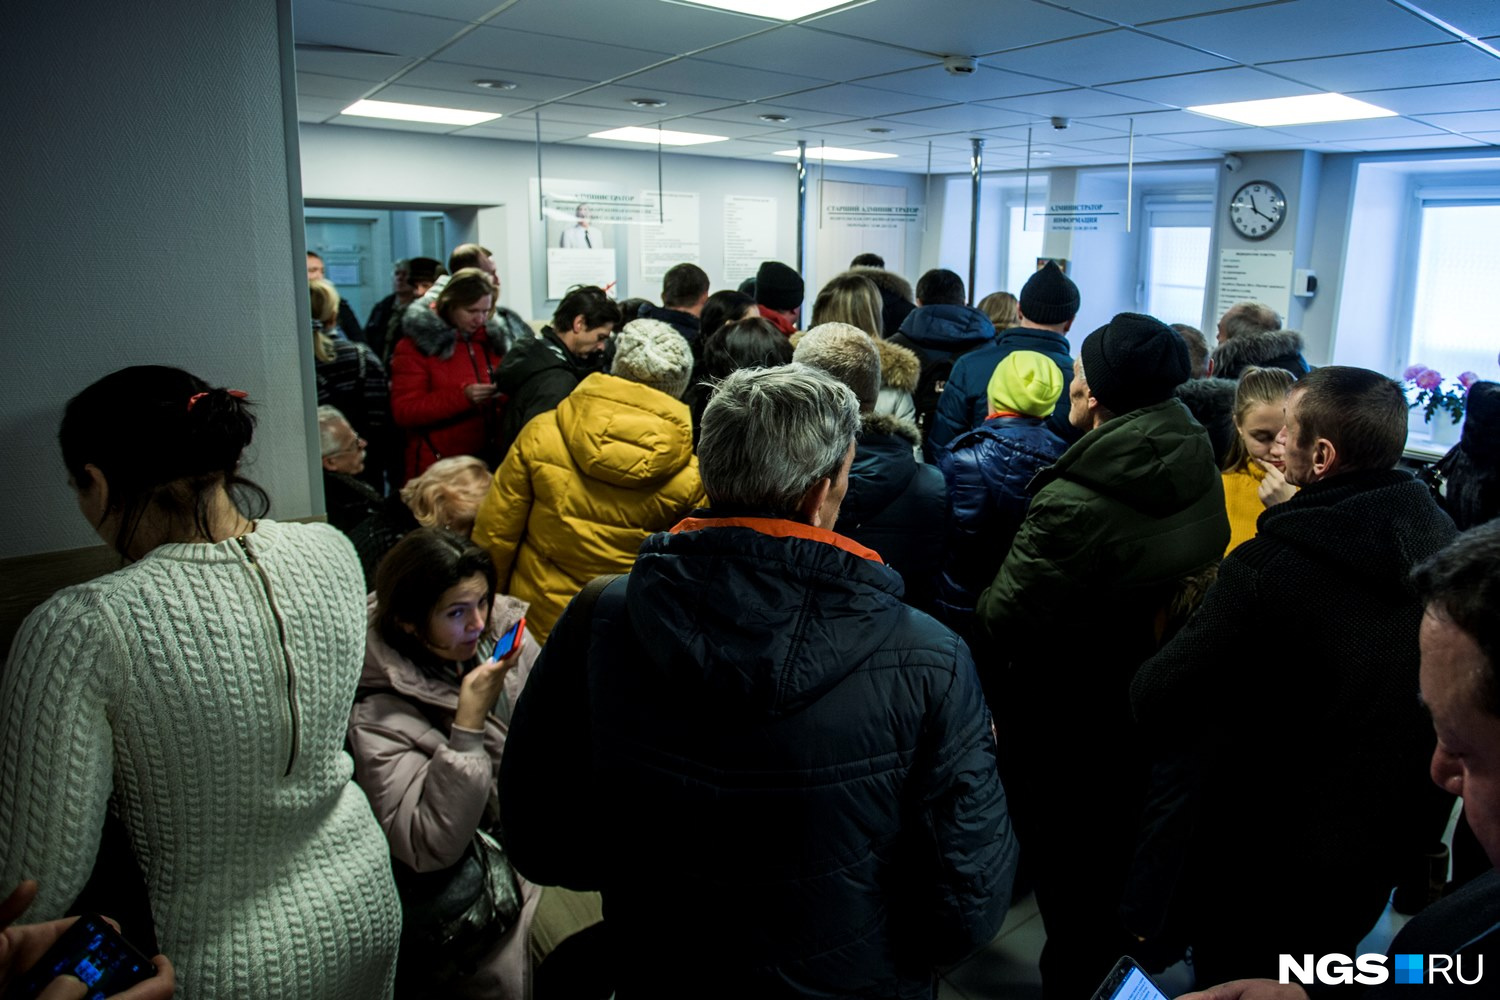 Толкучка встречала новосибирских водителей и в «Центр-Сирене» на Серебренниковской — люди последние дни стоят по несколько часов, а вчера очередь тоже растягивалась на улицу, говорят работники медцентра